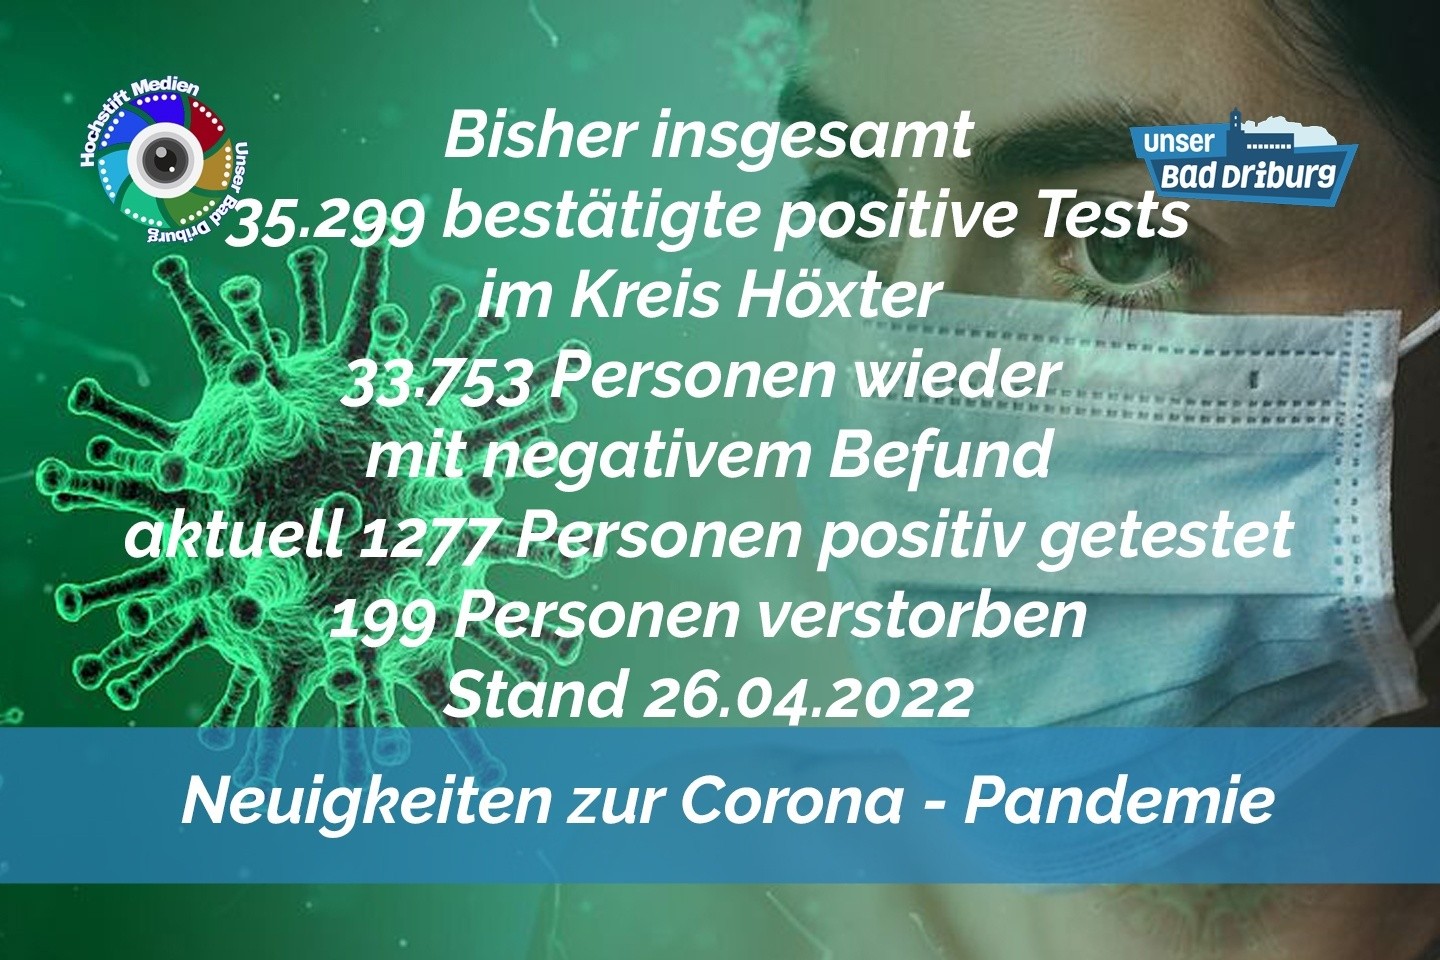 Update 26. April 2022: 211 weitere amtlich positive Tests im Kreis Höxter